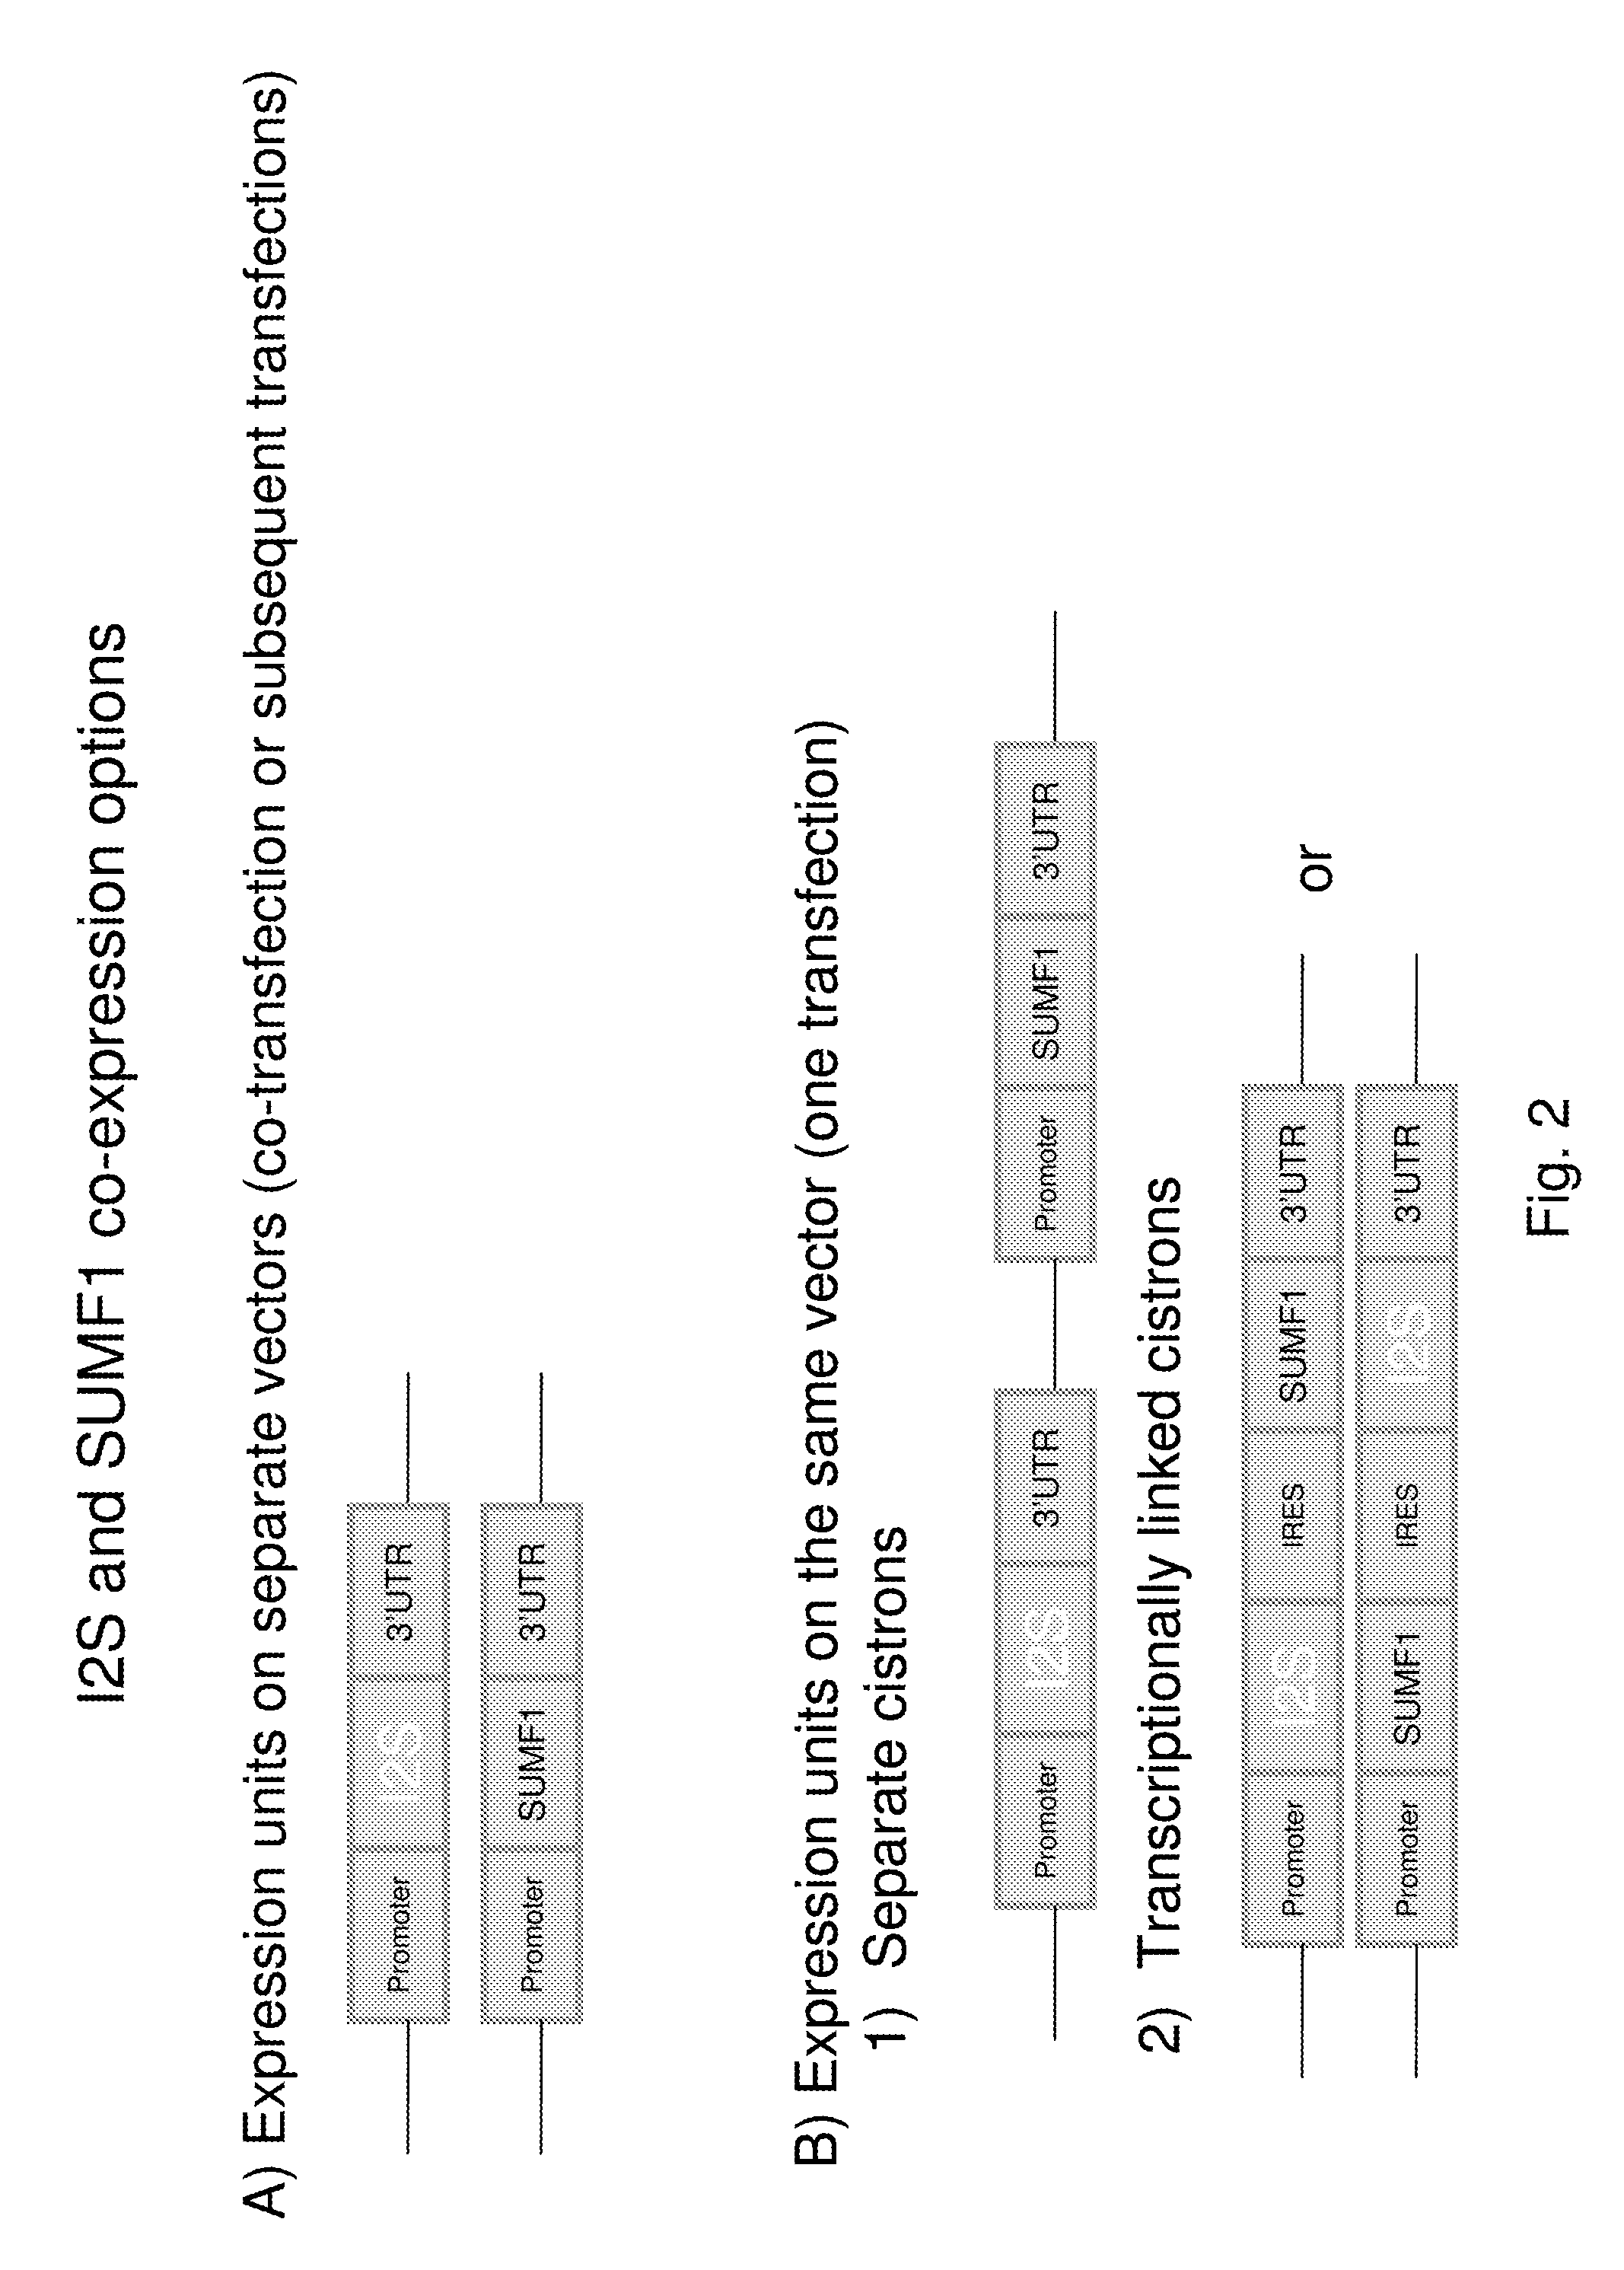 Method of producing recombinant iduronate-2-sulfatase